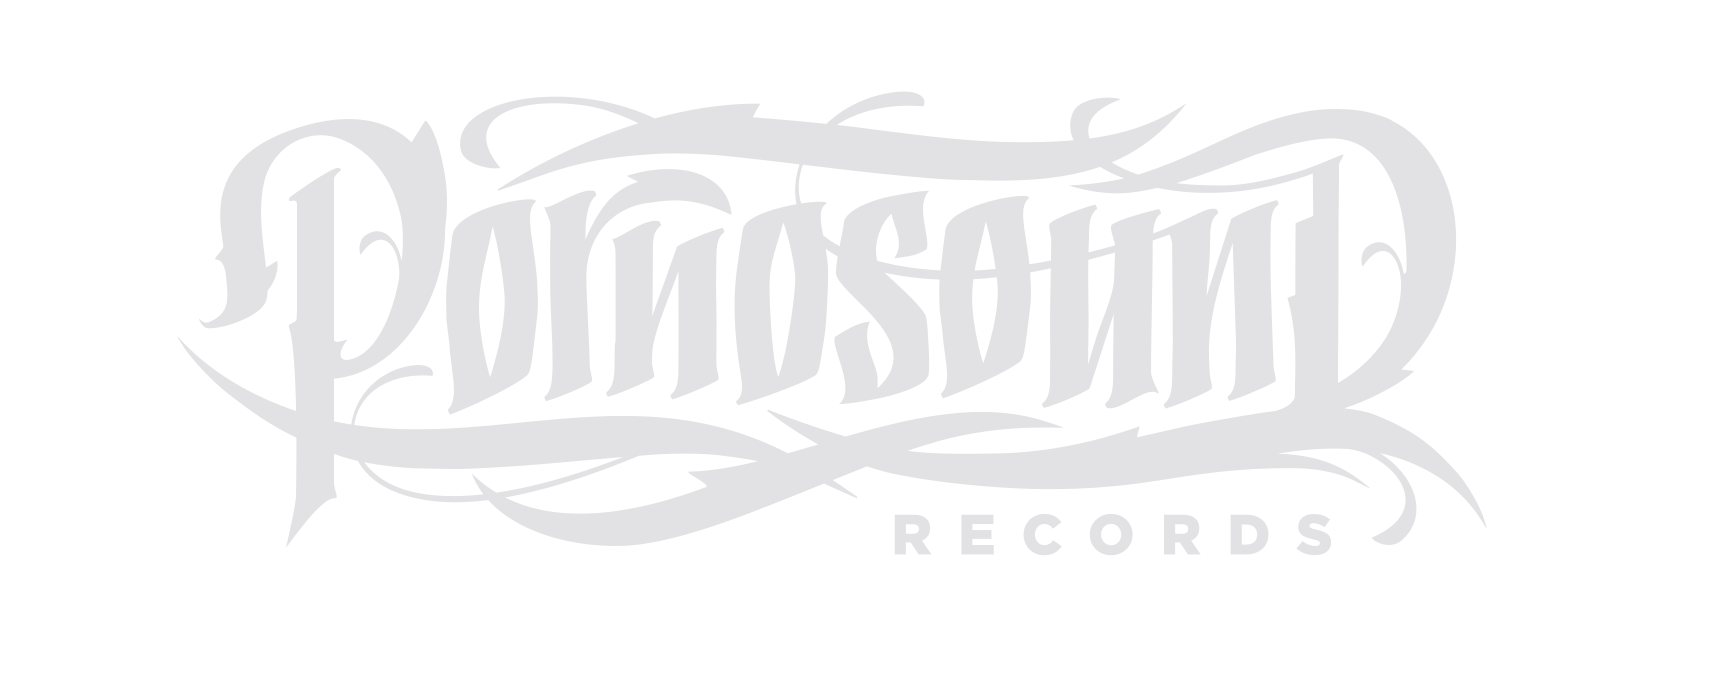 Pornosound Records